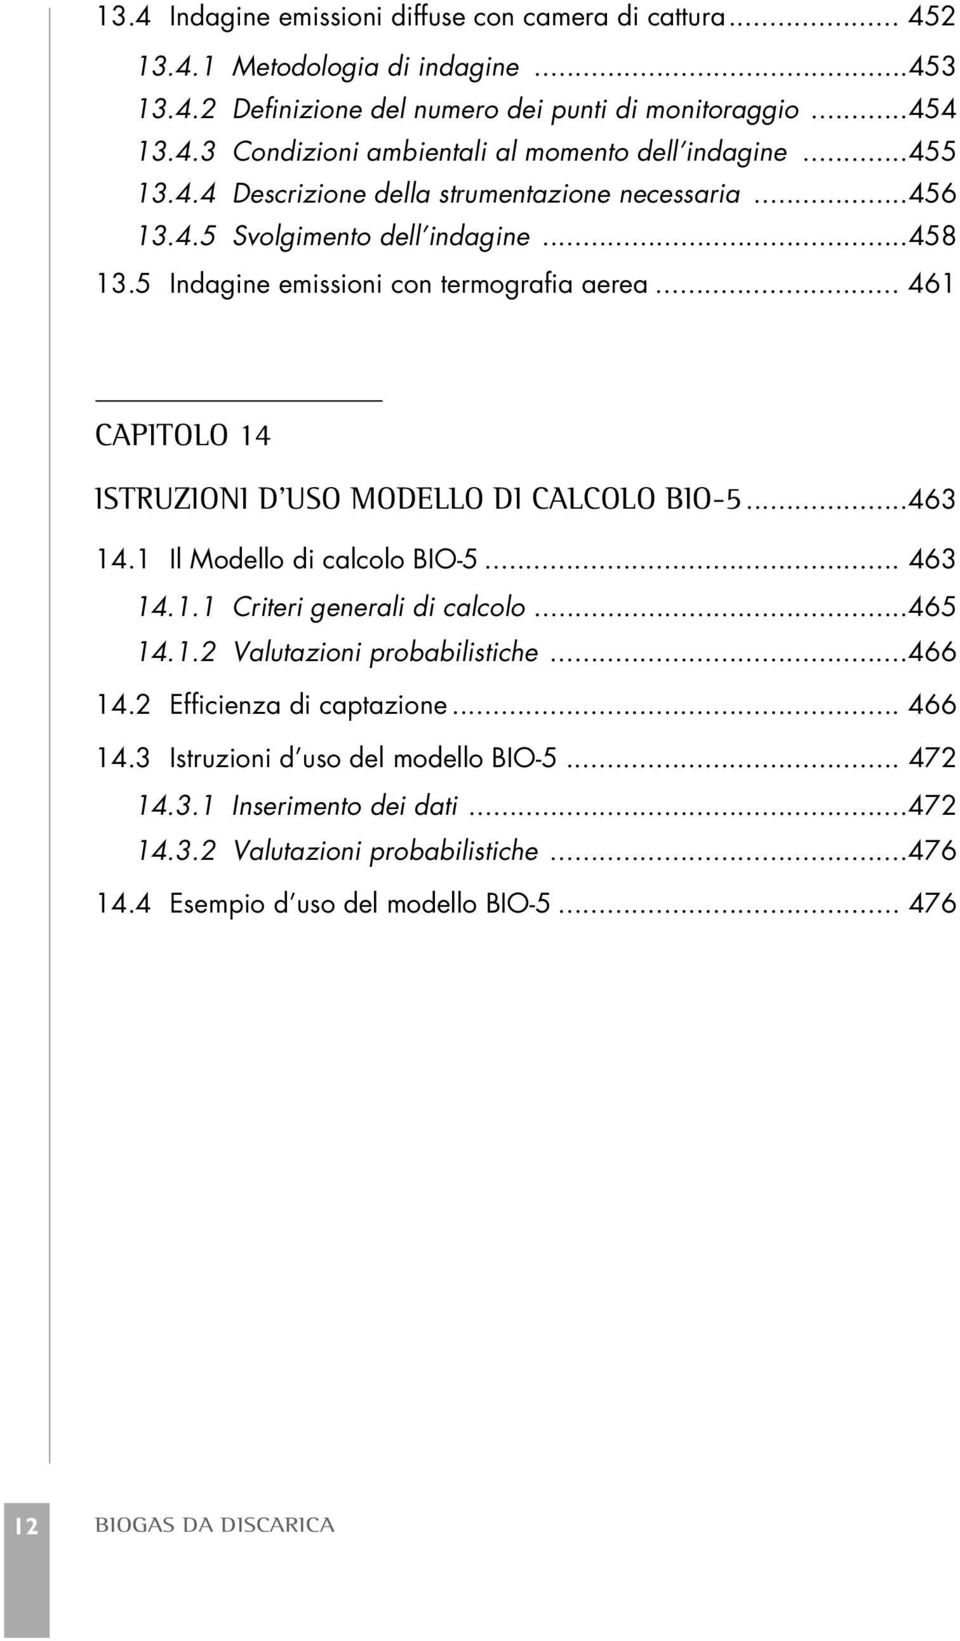 .. 461 CAPITOLO 14 ISTRUZIONI D USO MODELLO DI CALCOLO BIO-5...463 14.1 Il Modello di calcolo BIO-5... 463 14.1.1 Criteri generali di calcolo...465 14.1.2 Valutazioni probabilistiche...466 14.